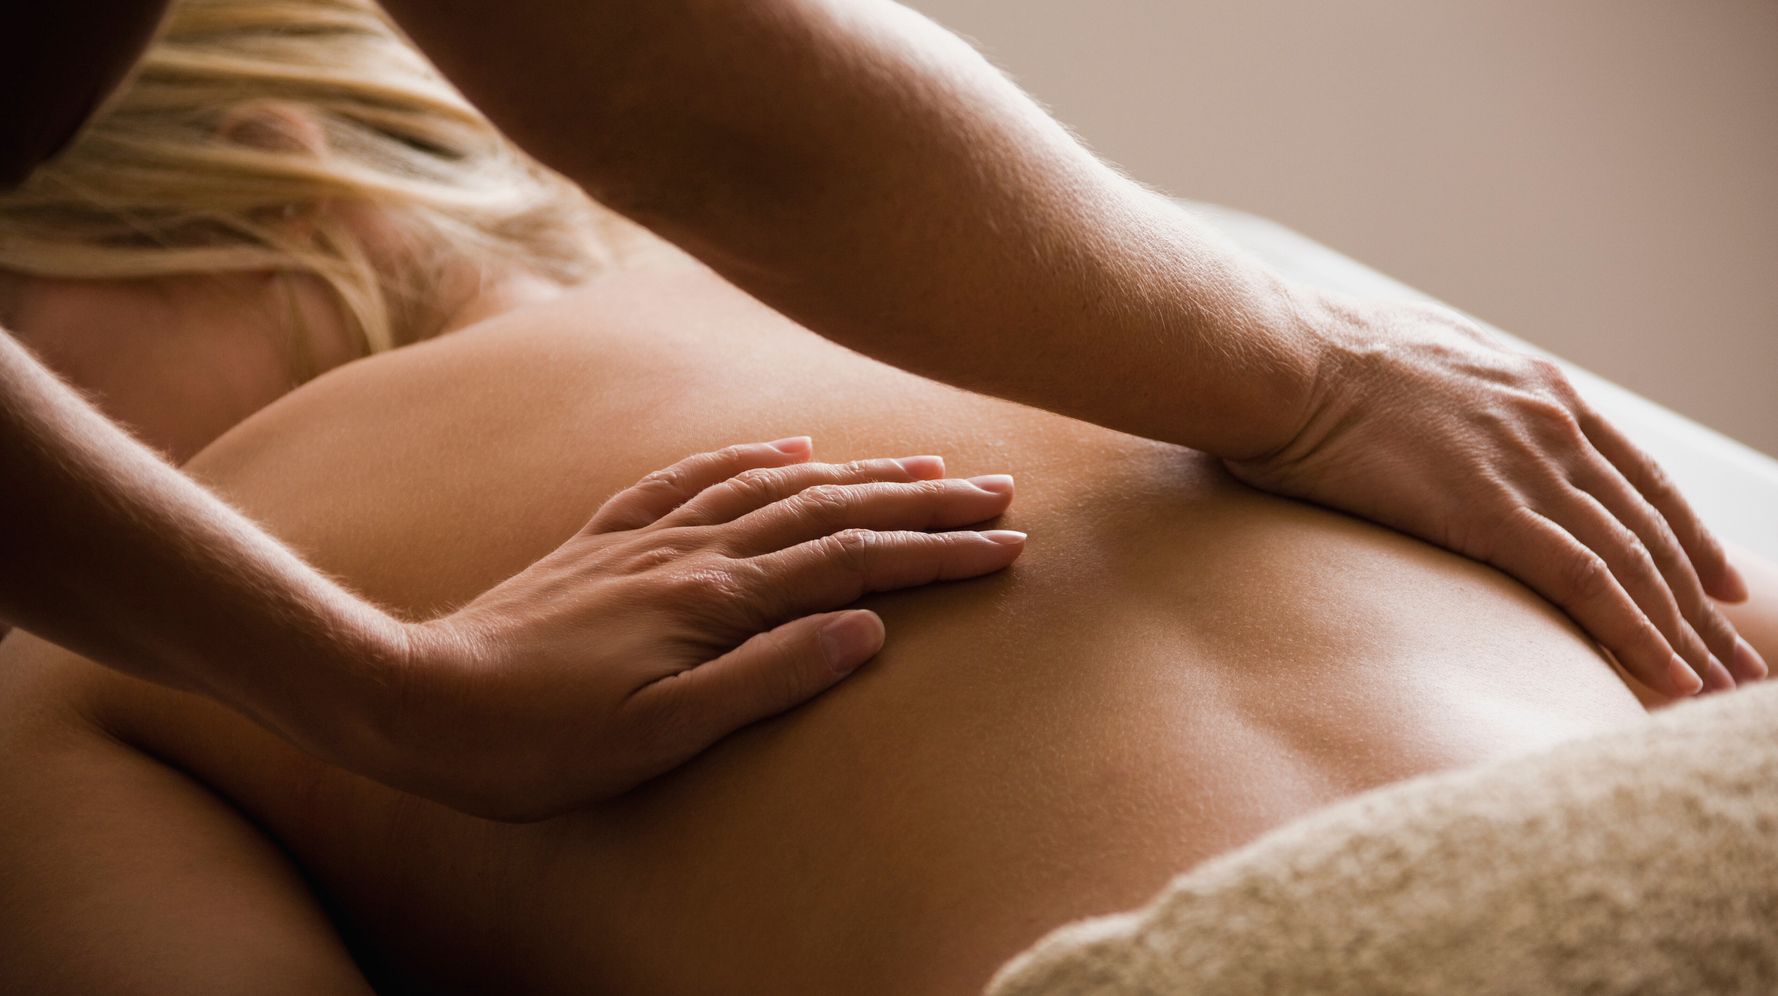 Best Massage Gun For Sciatica - Expert Reviews & Hands-on Insights